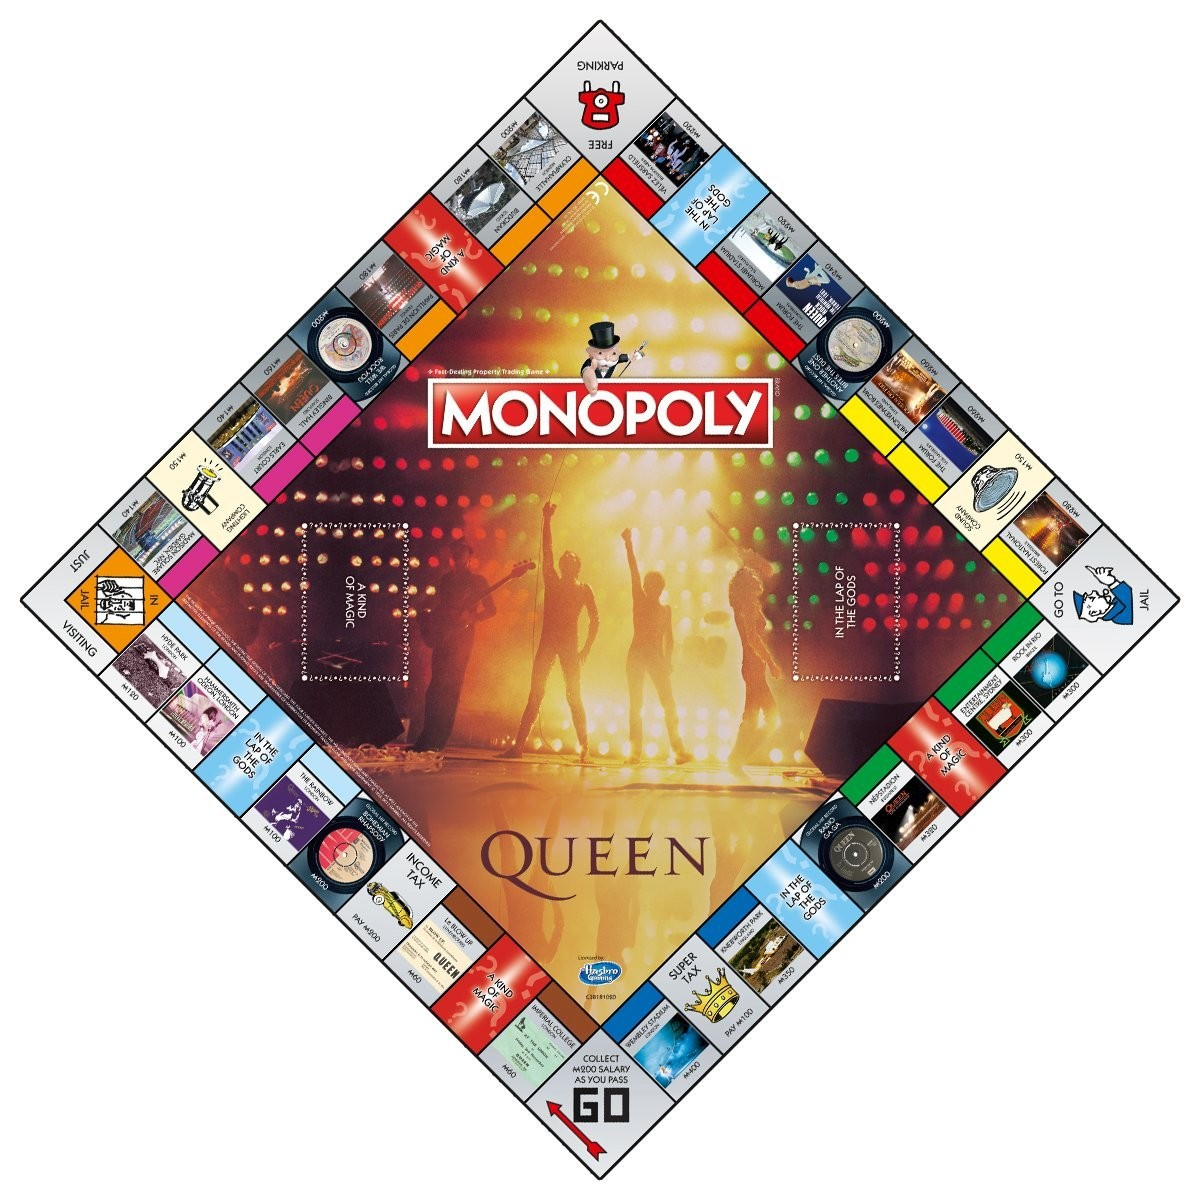 Monopoly Queen englisch